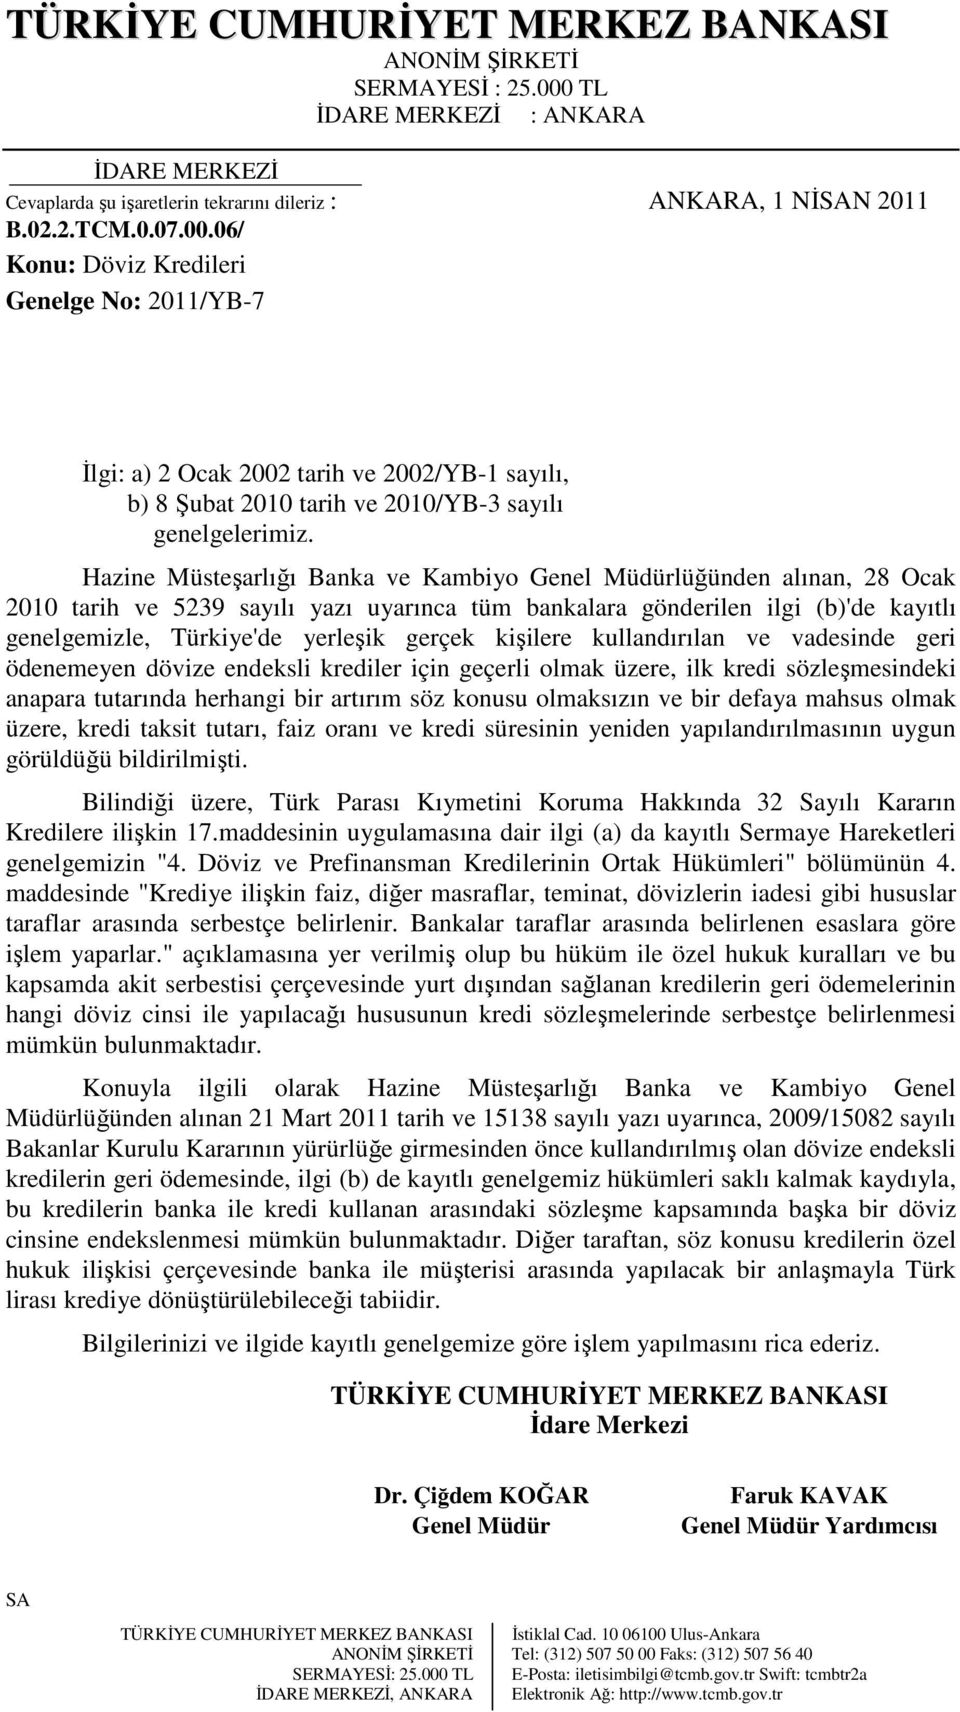 Hazine Müsteşarlığı Banka ve Kambiyo Genel Müdürlüğünden alınan, 28 Ocak 2010 tarih ve 5239 sayılı yazı uyarınca tüm bankalara gönderilen ilgi (b)'de kayıtlı genelgemizle, Türkiye'de yerleşik gerçek